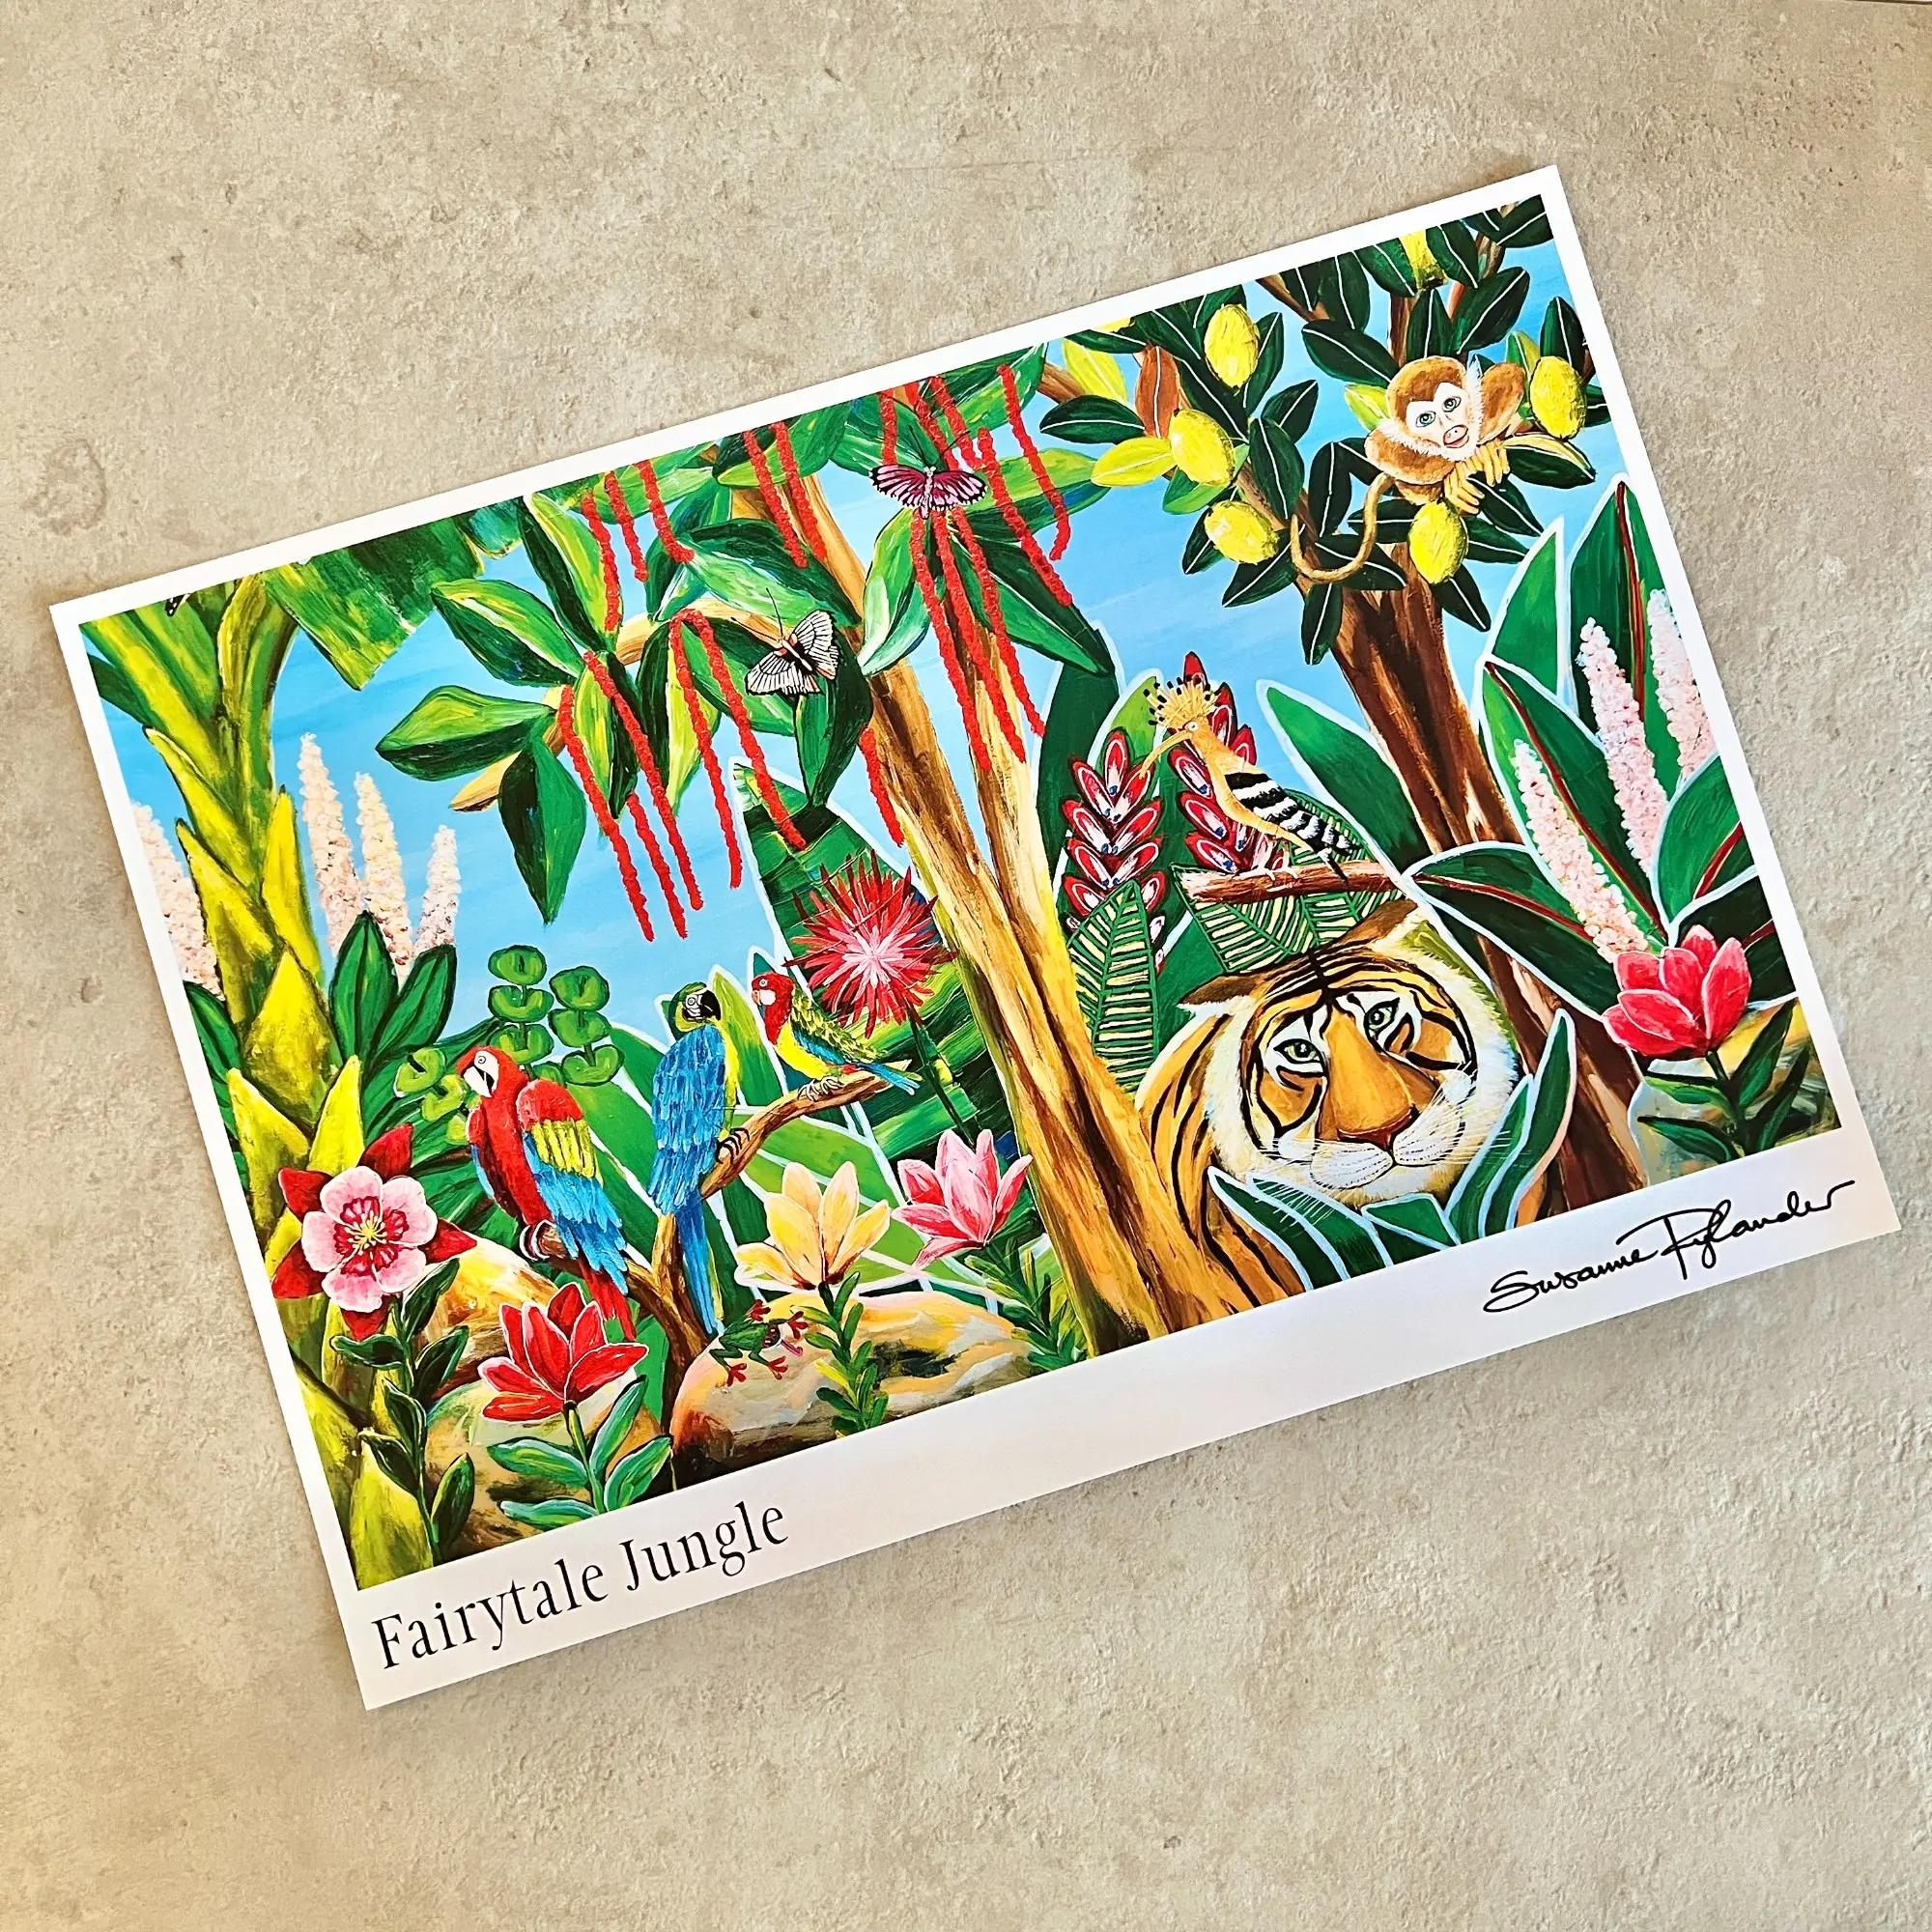 Fairytale Jungle Plakat